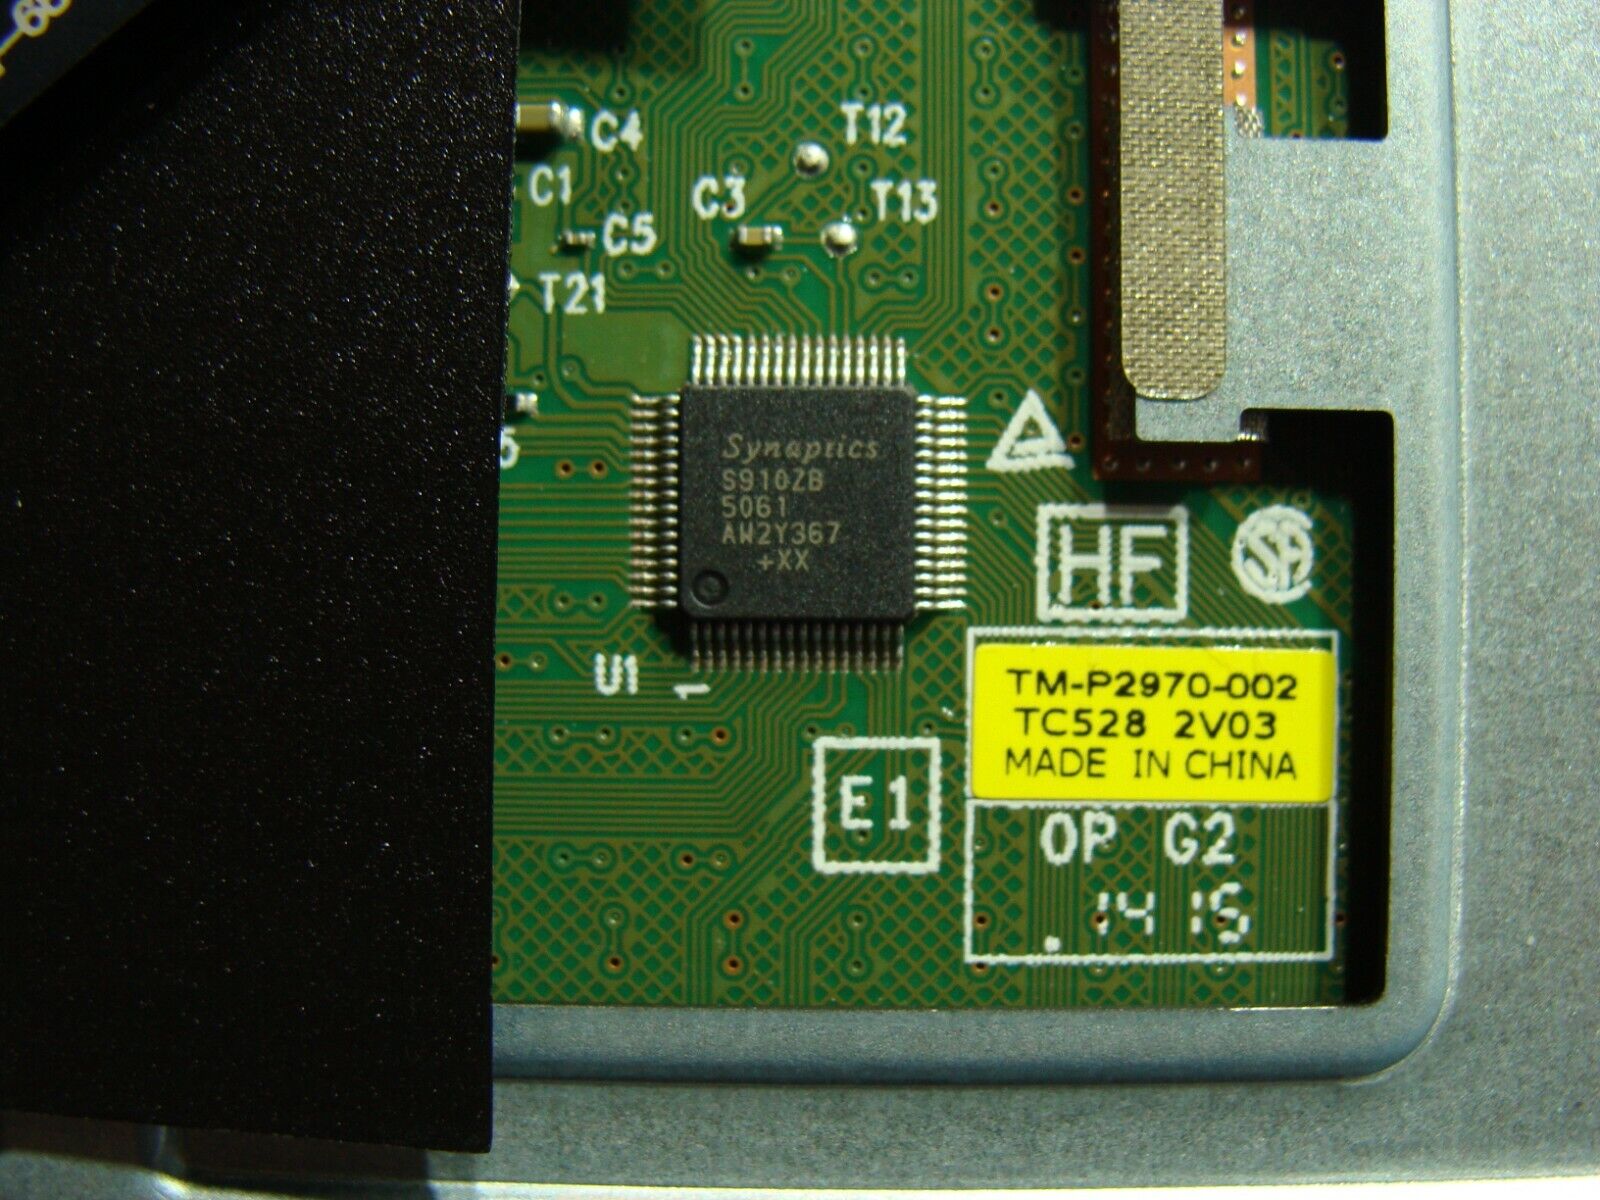 Acer Aspire E5-532-C7K4 15.6